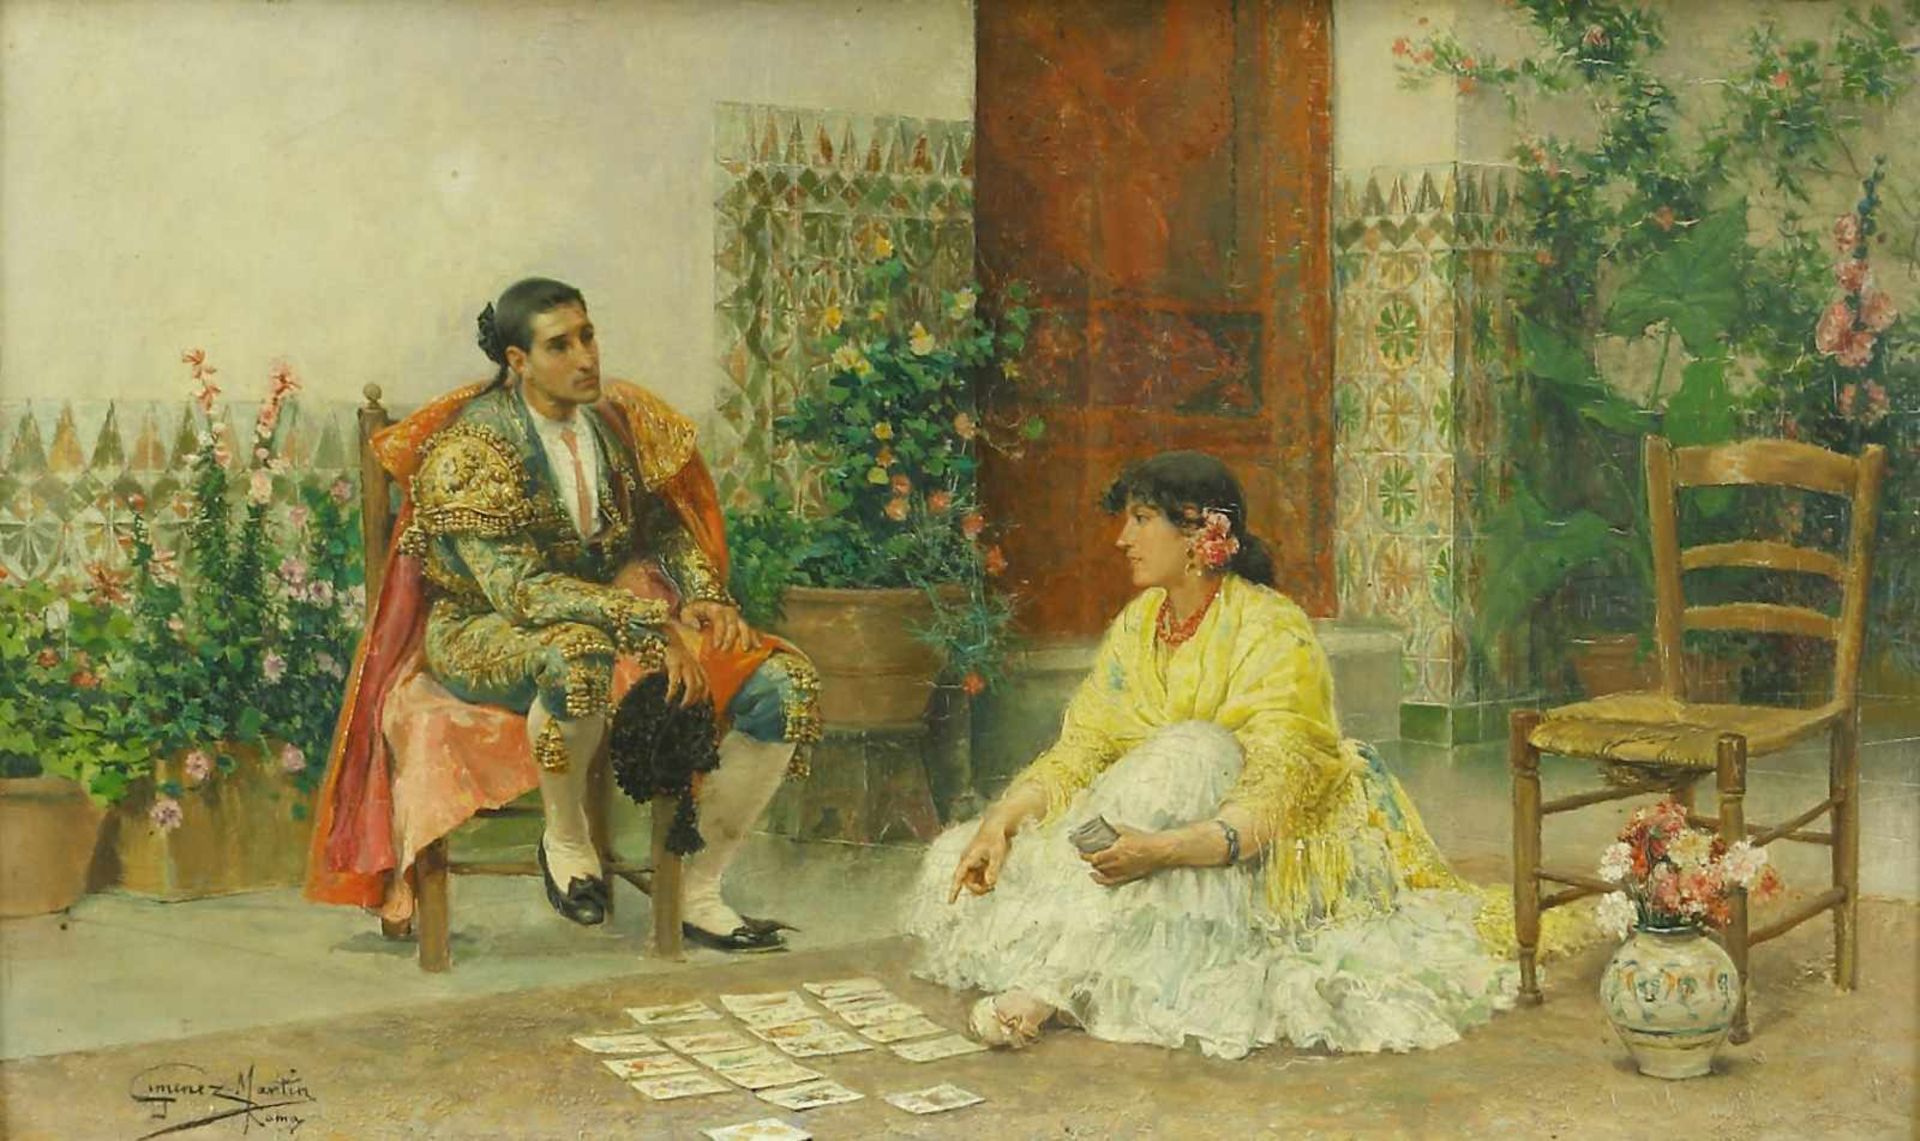 Jiménez Martín, Juan (1855 Adanero - 1901 Madrid)Spanischer Stierkämpfer bei einer Kartenlegerin. Öl